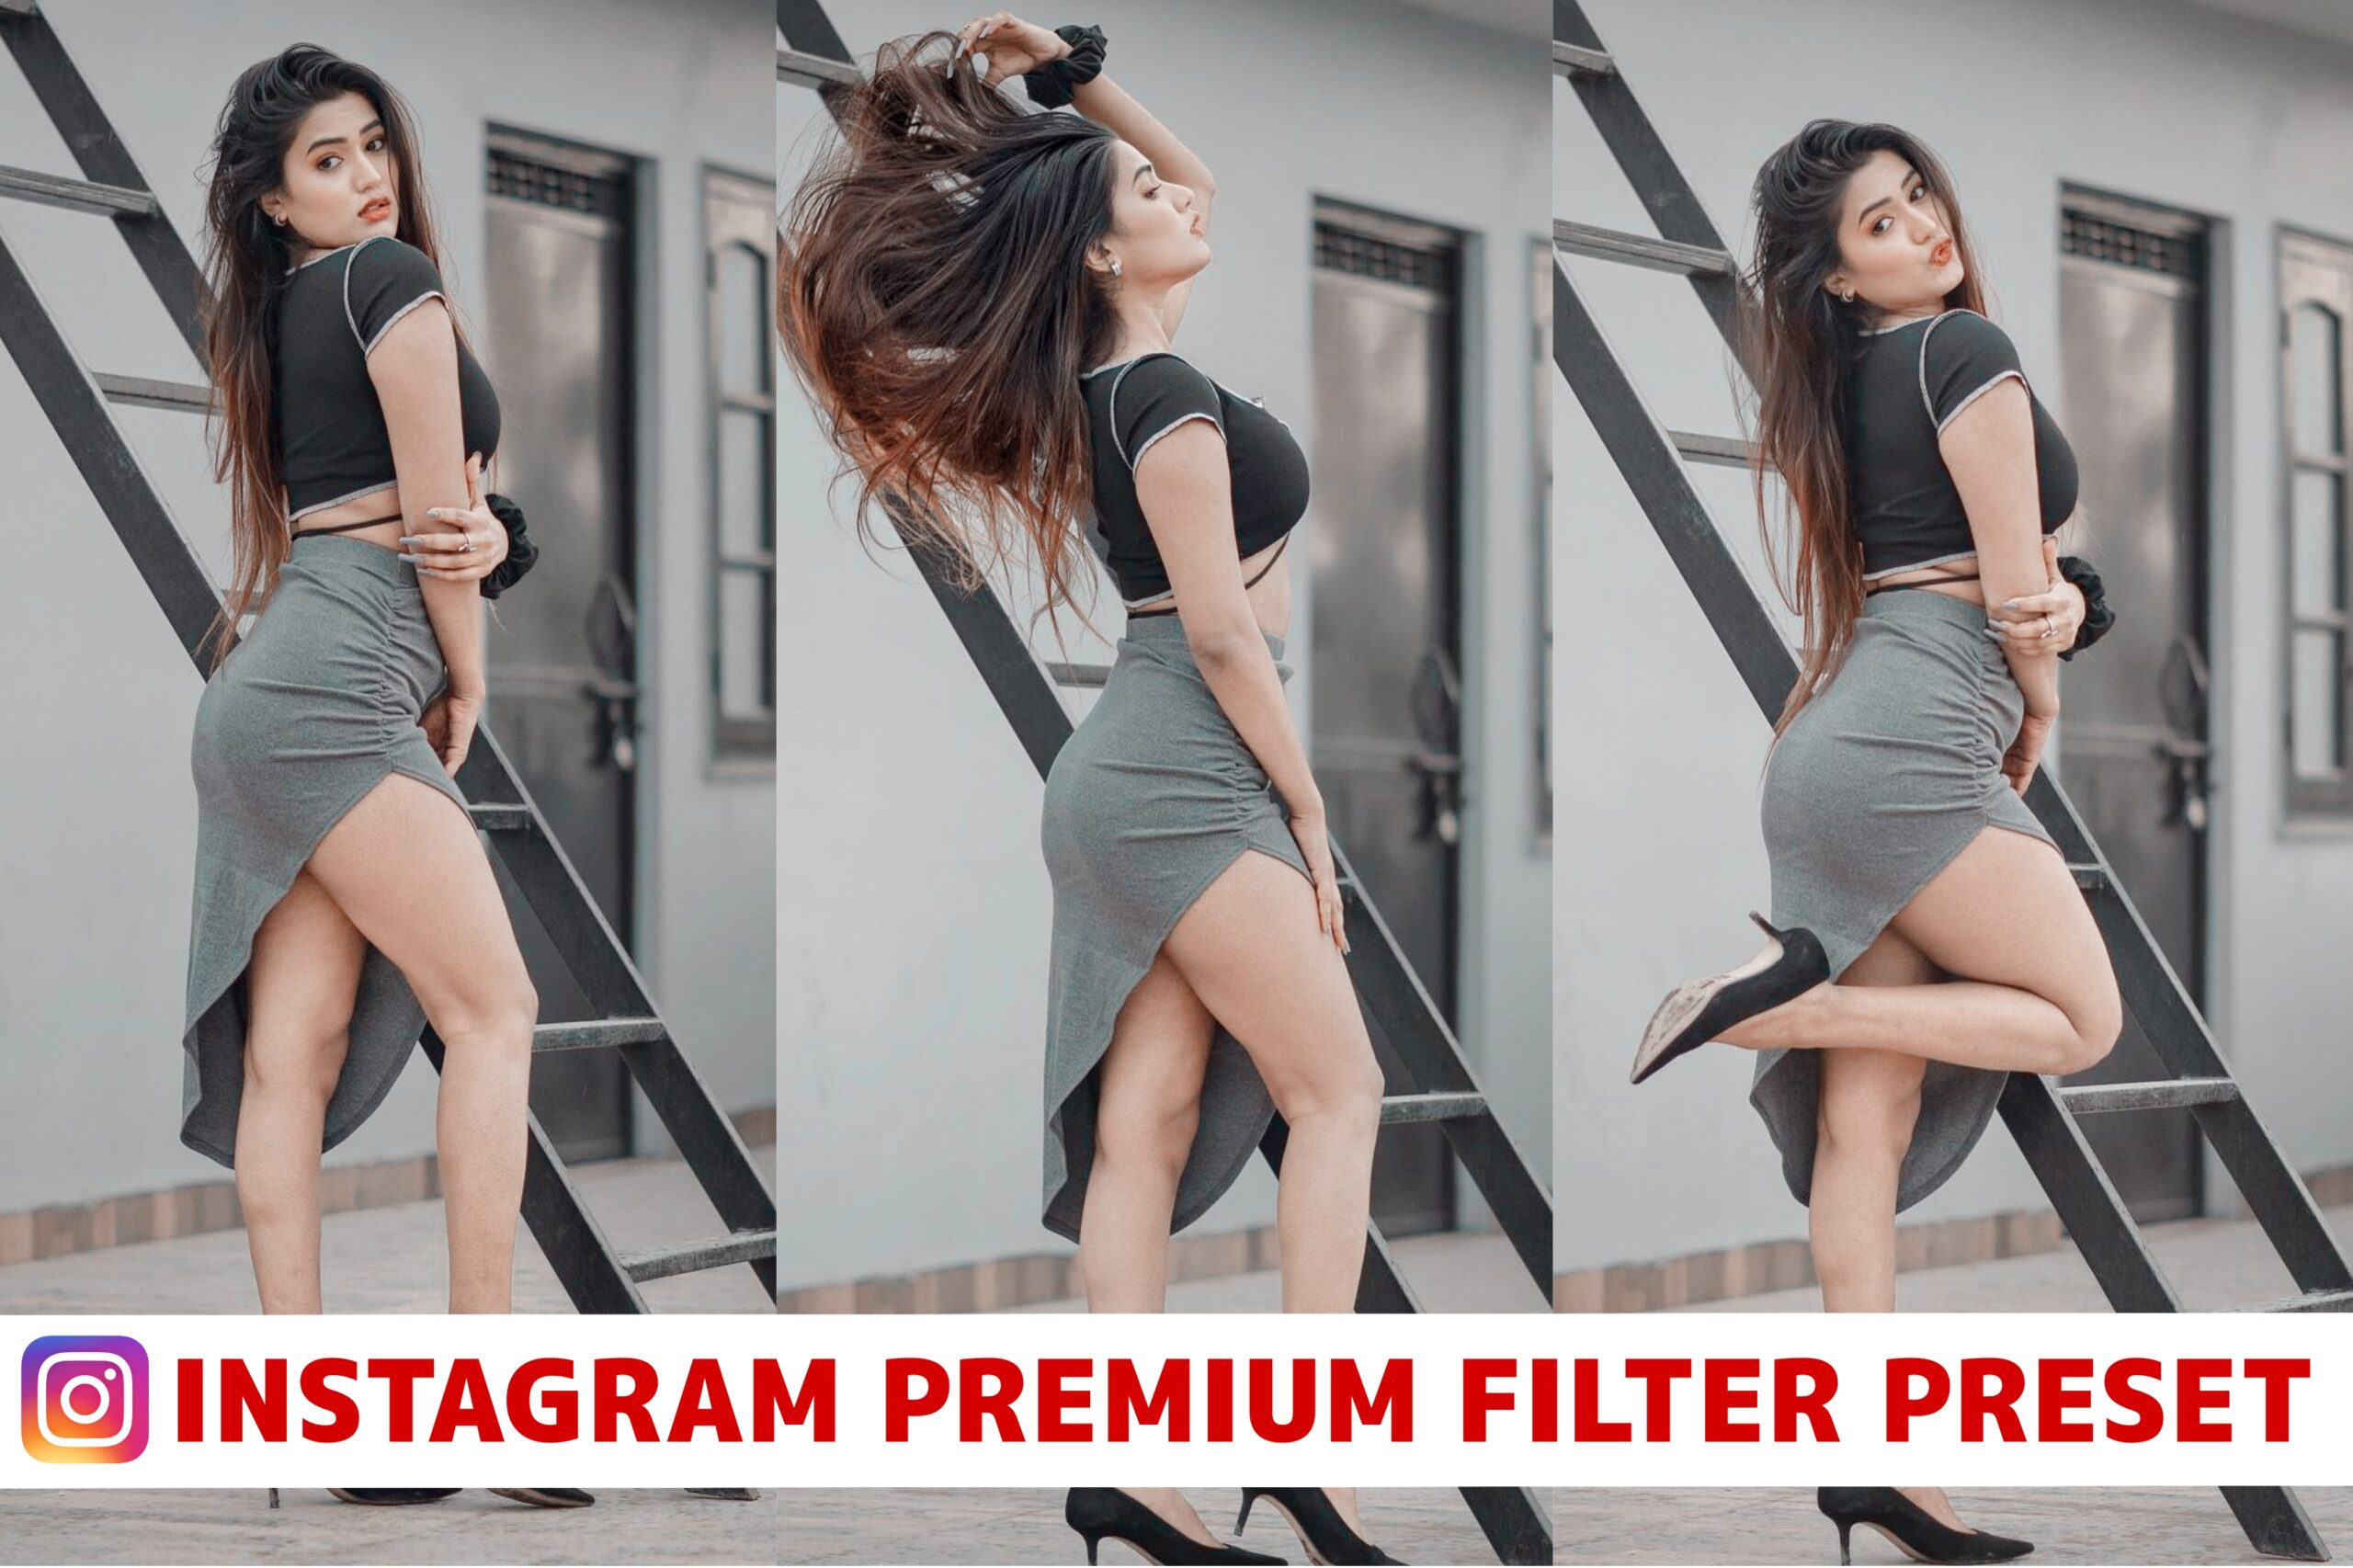 Insatagram premium filter preset